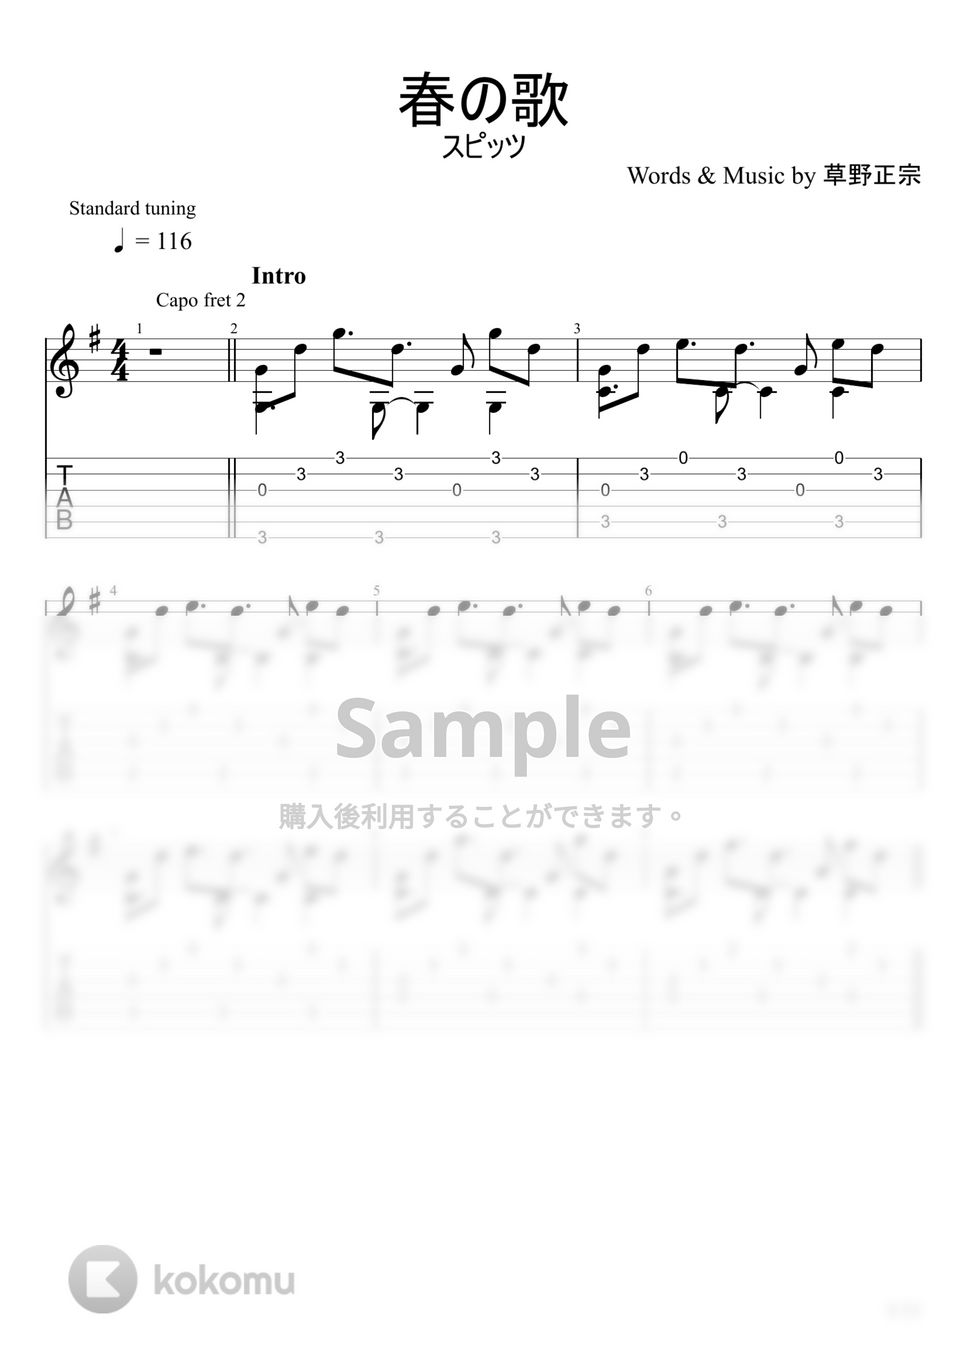 スピッツ - 春の歌 (ソロギター) by u3danchou